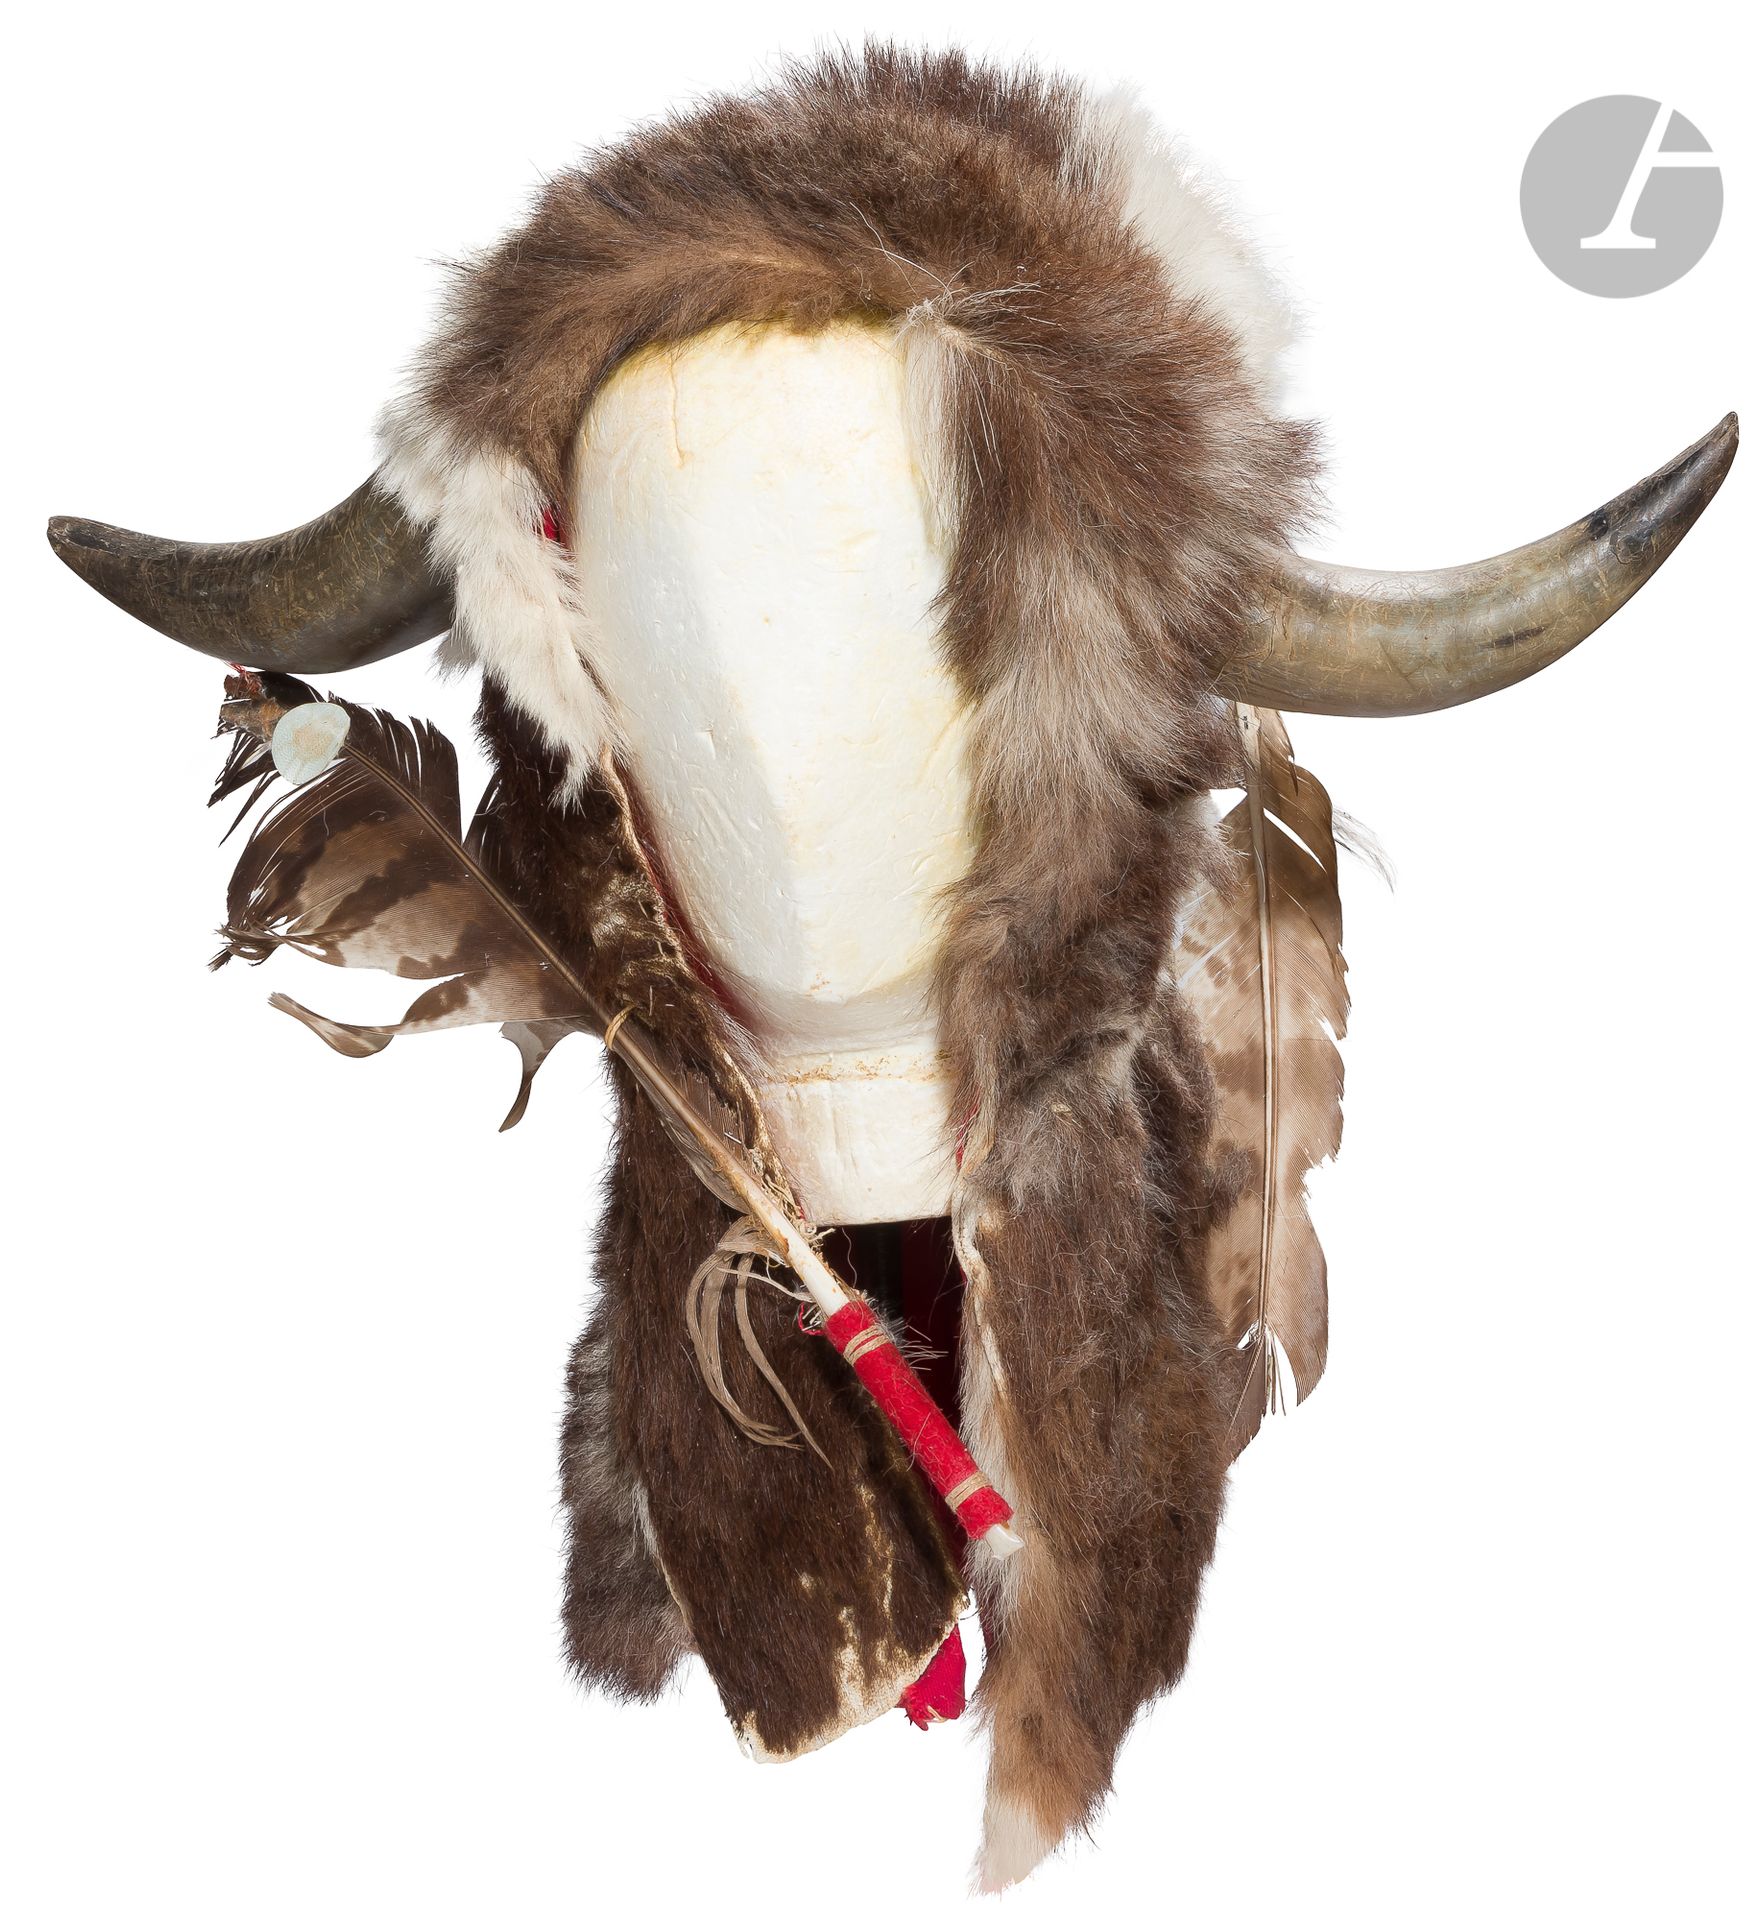 Null 印第安风格的 "水牛 "头饰和手套。
毛皮，带角和羽毛的头饰。
20世纪。